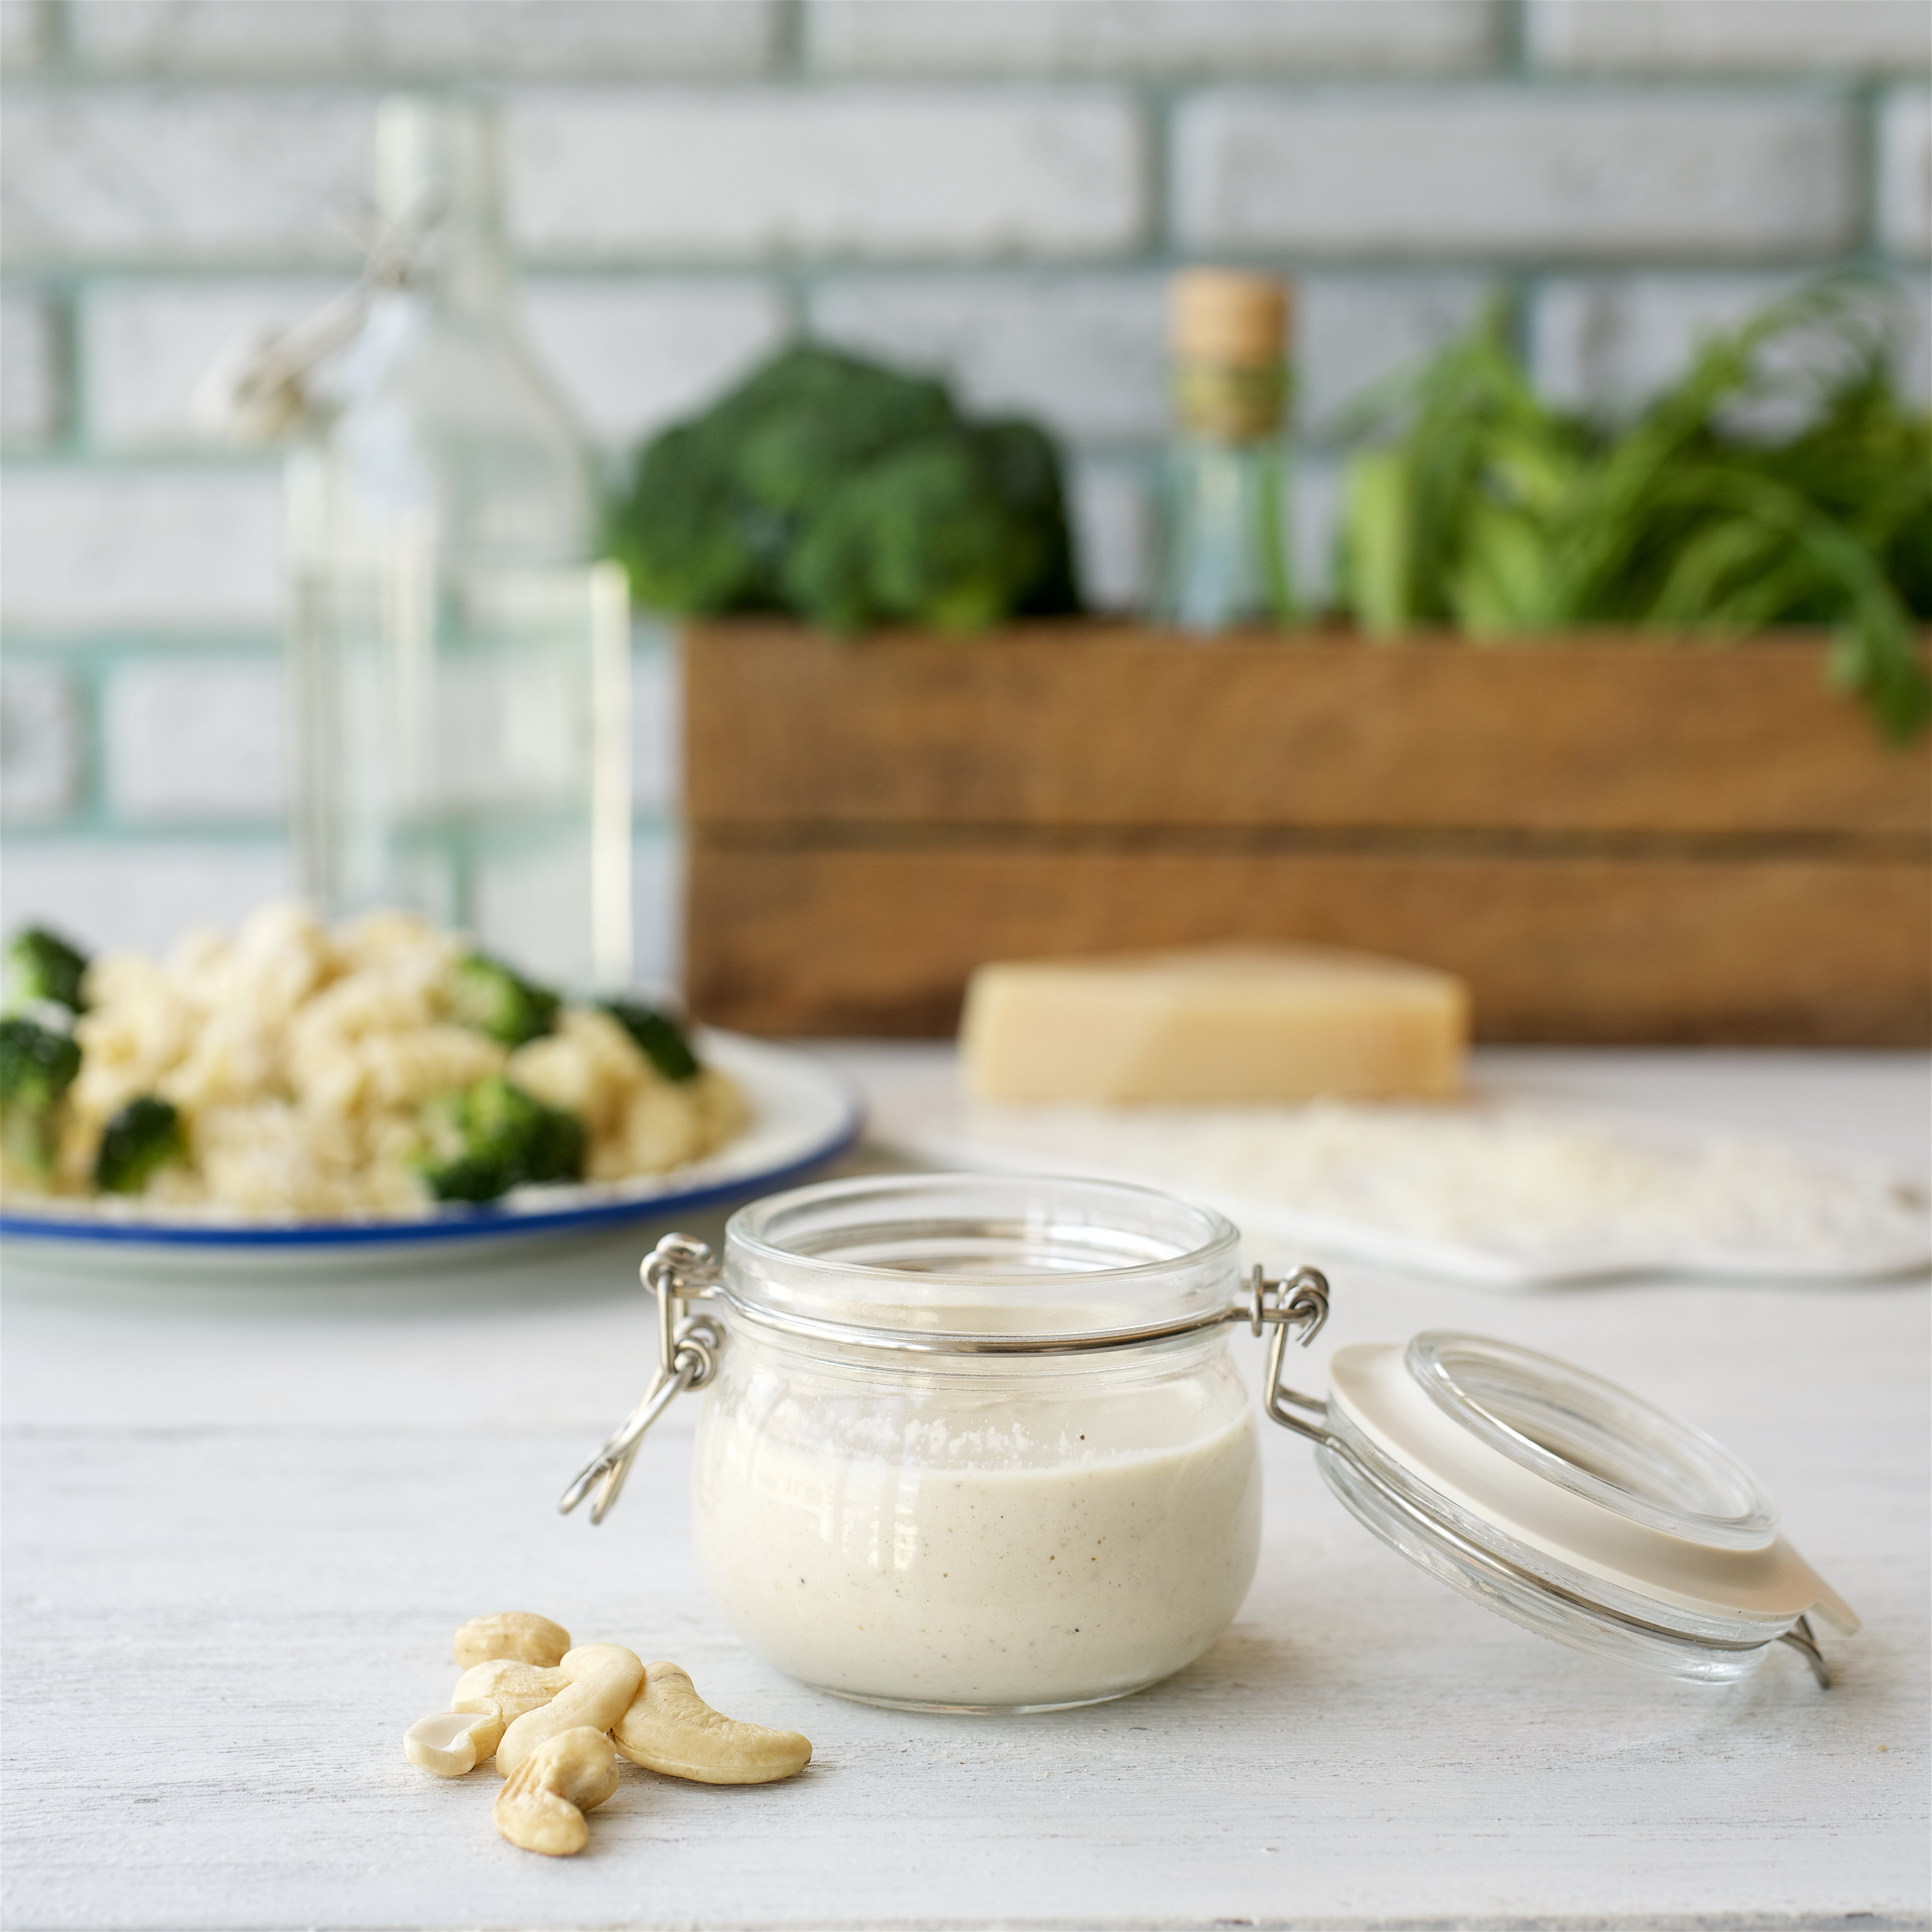 Plant-based mystery box inspiration: Basic cashew cream